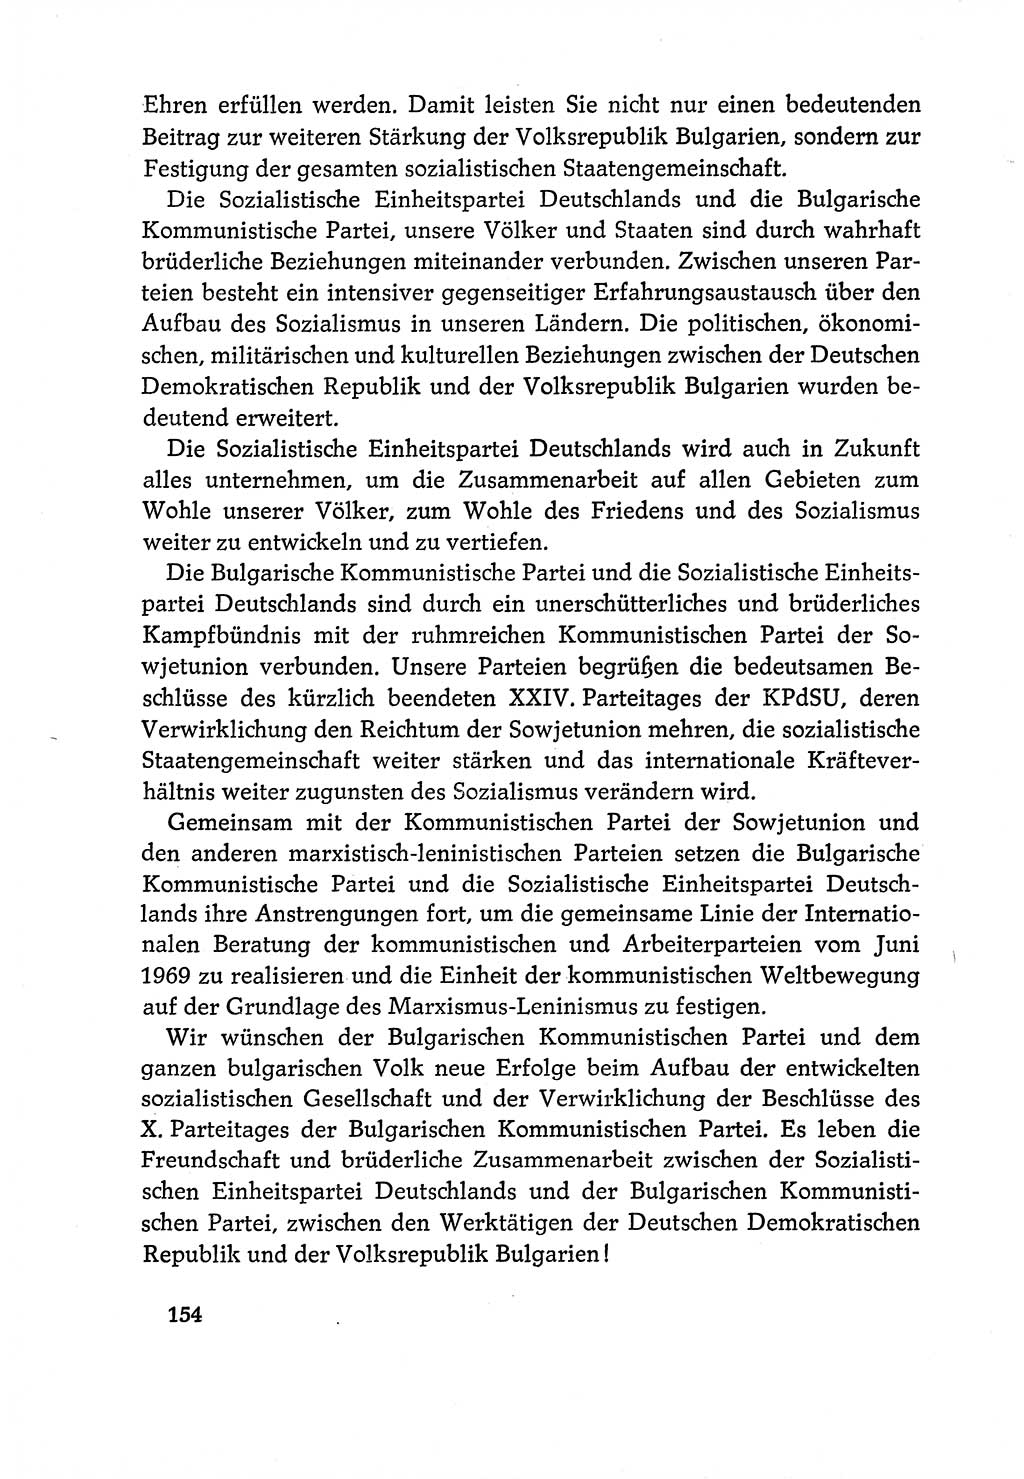 Dokumente der Sozialistischen Einheitspartei Deutschlands (SED) [Deutsche Demokratische Republik (DDR)] 1970-1971, Seite 154 (Dok. SED DDR 1970-1971, S. 154)